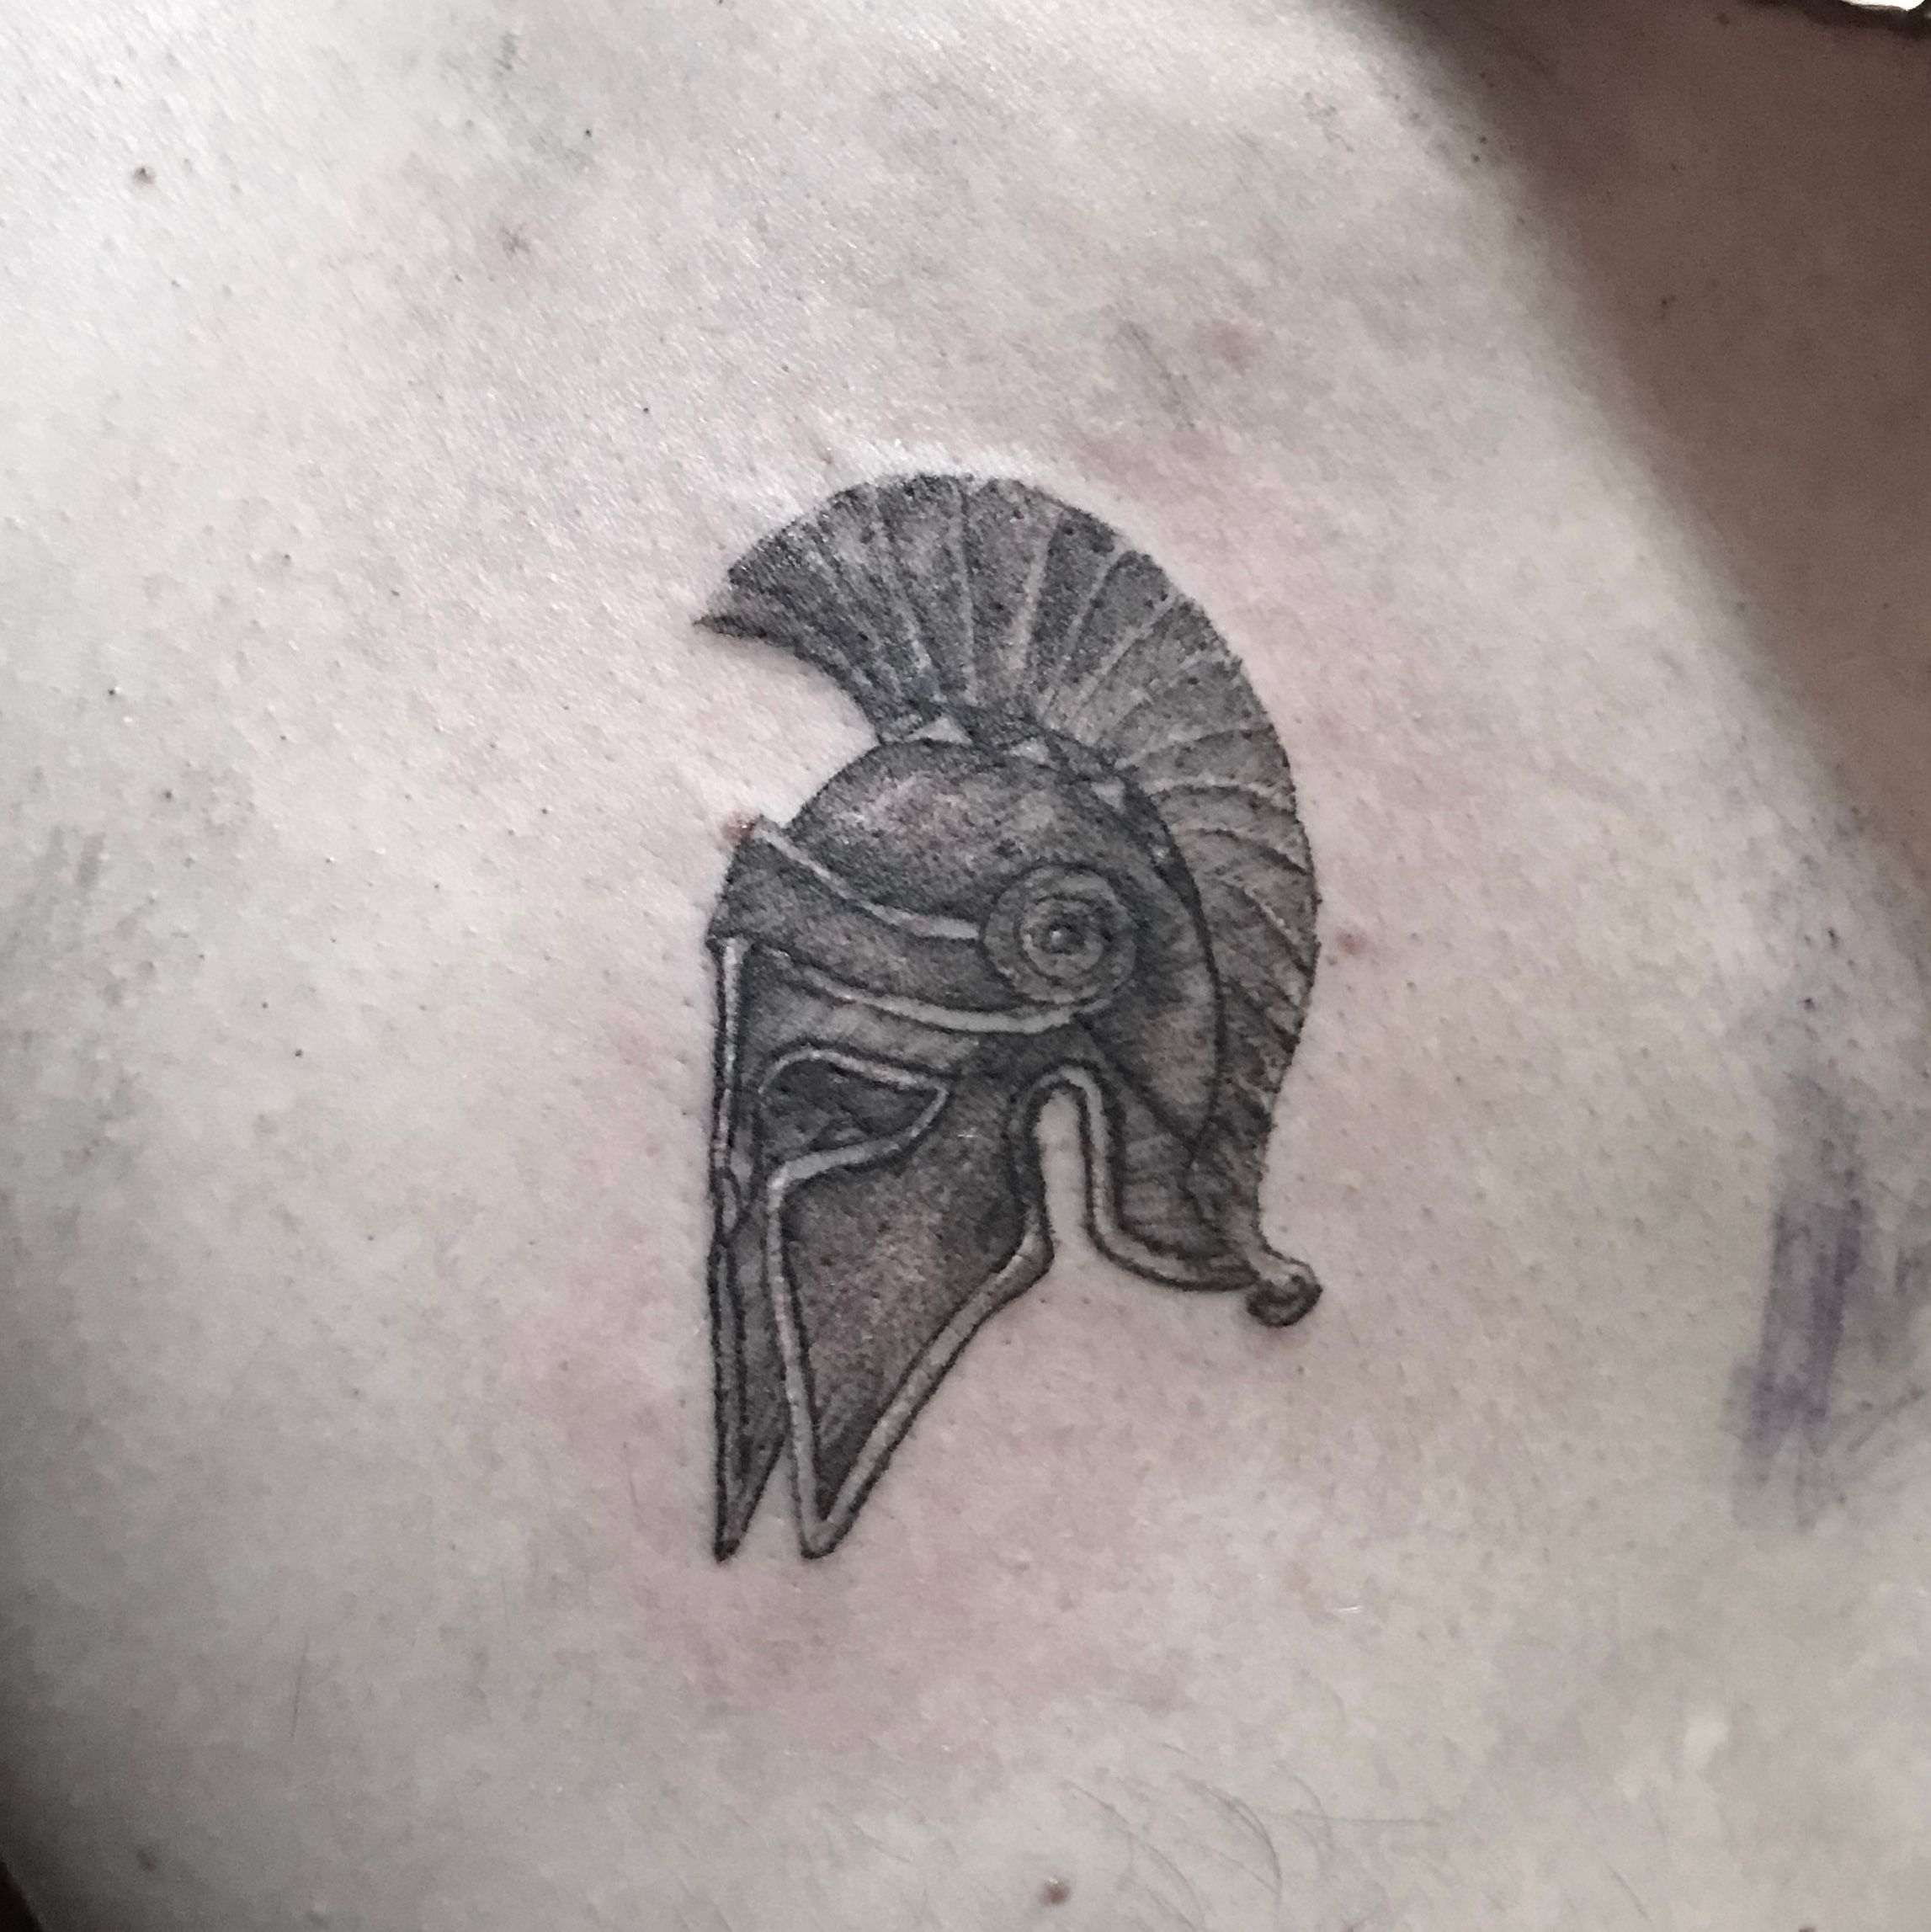 Sparta Tattoo - Best Tattoo Ideas Gallery